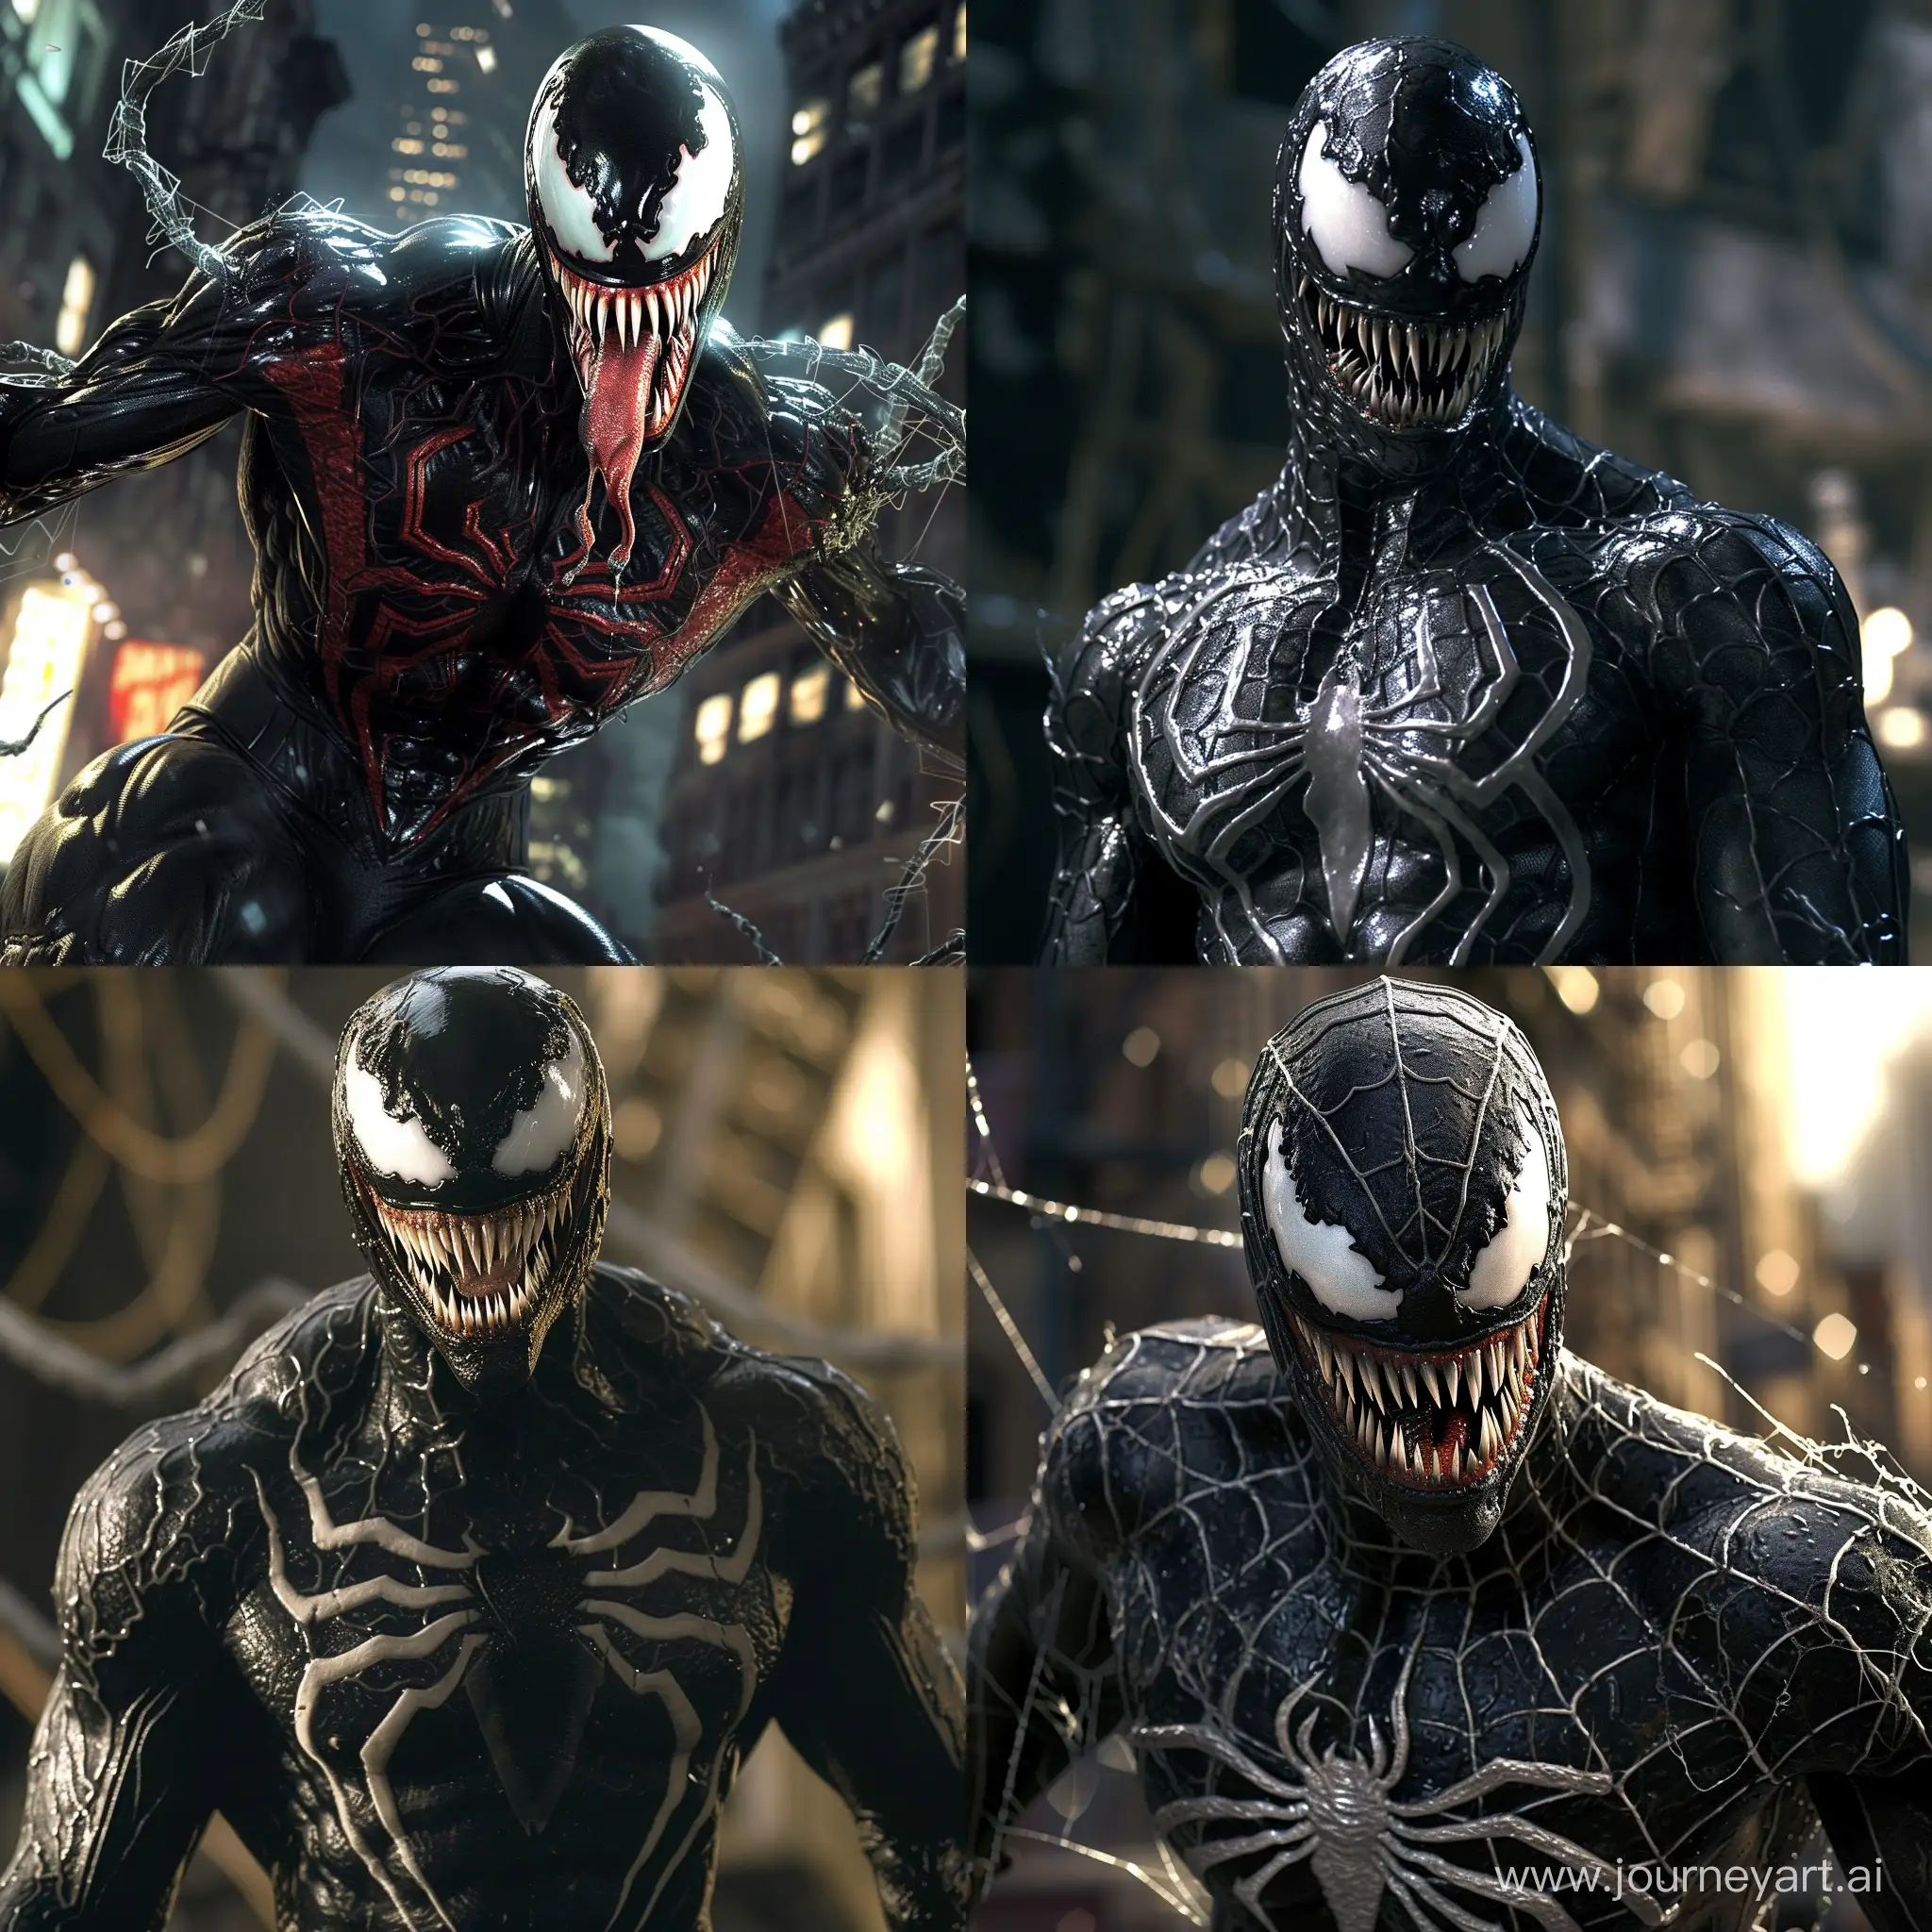 Epic-SpiderMan-vs-Venom-Symbiote-Showdown